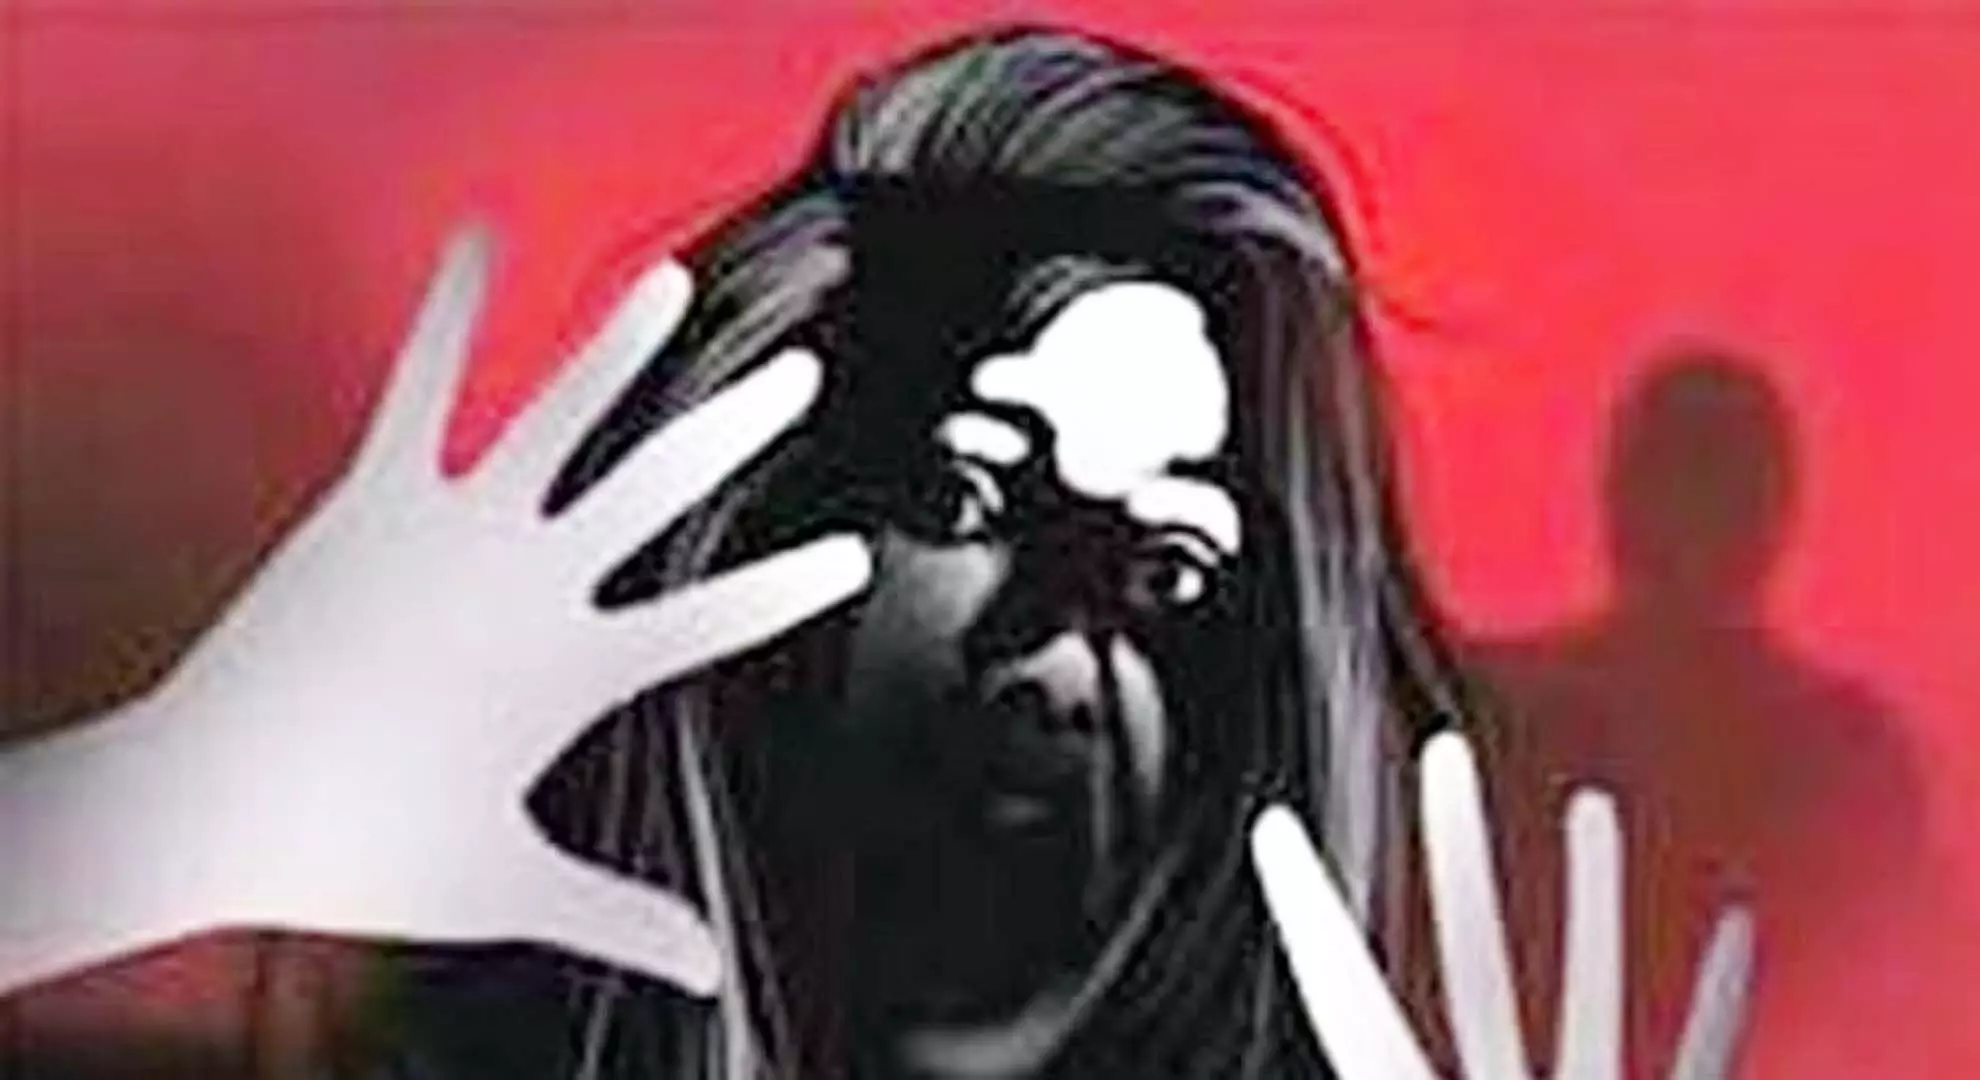 चेन्नई में सहकर्मी ने 38 वर्षीय महिला से बलात्कार किया, वीडियो क्लिप की धमकी दी